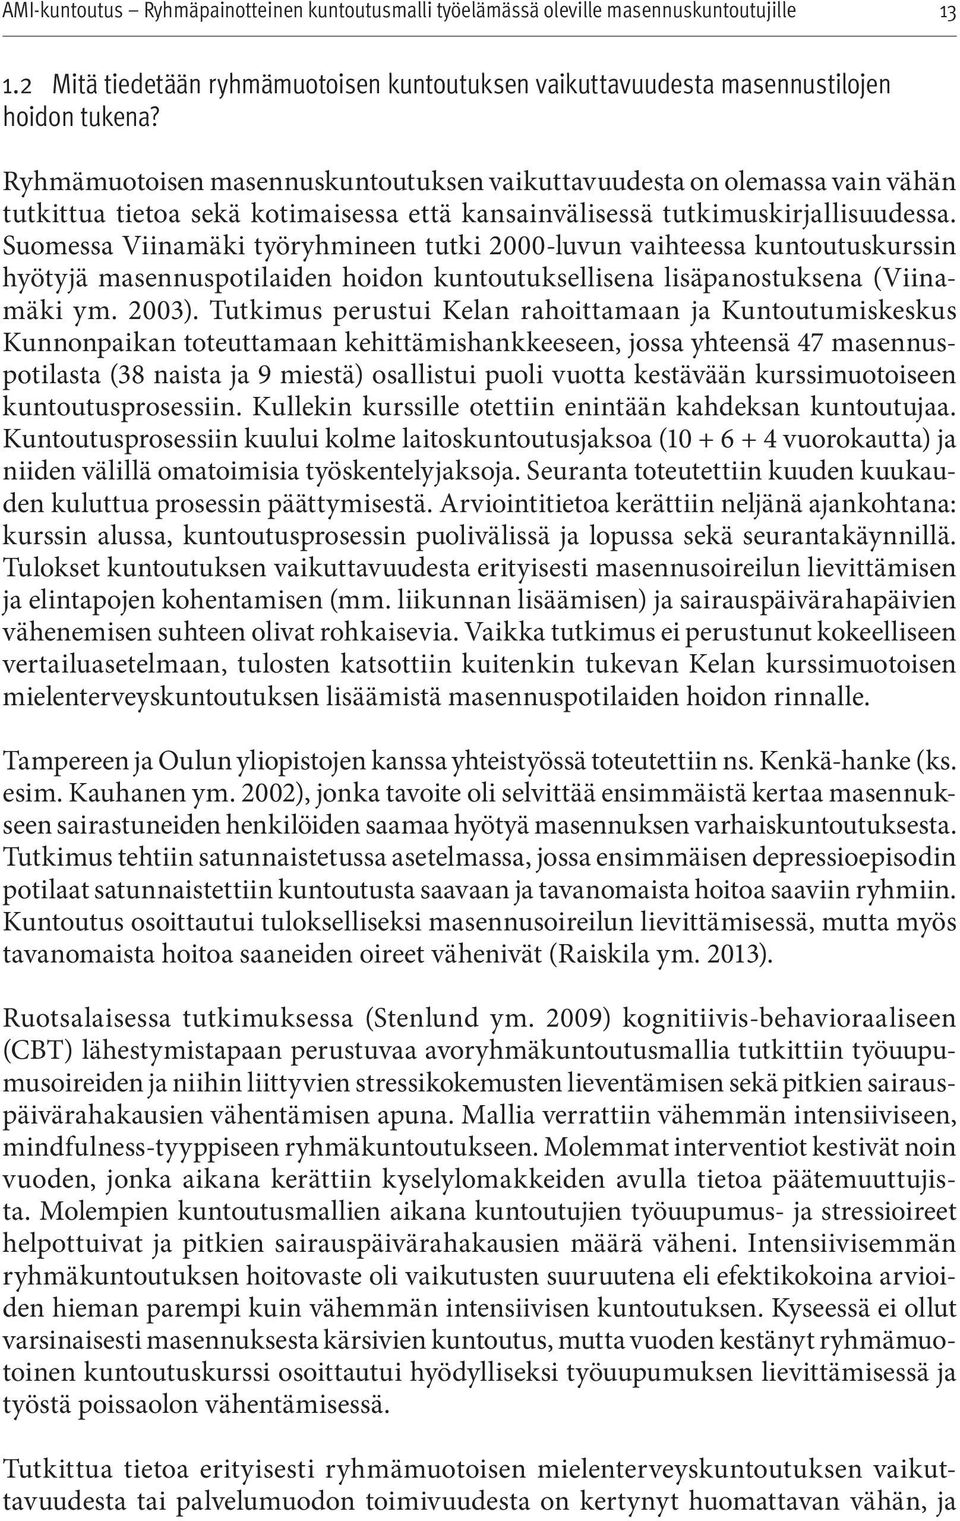 Suomessa Viinamäki työryhmineen tutki 2000-luvun vaihteessa kuntoutuskurssin hyötyjä masennuspotilaiden hoidon kuntoutuksellisena lisäpanostuksena (Viinamäki ym. 2003).